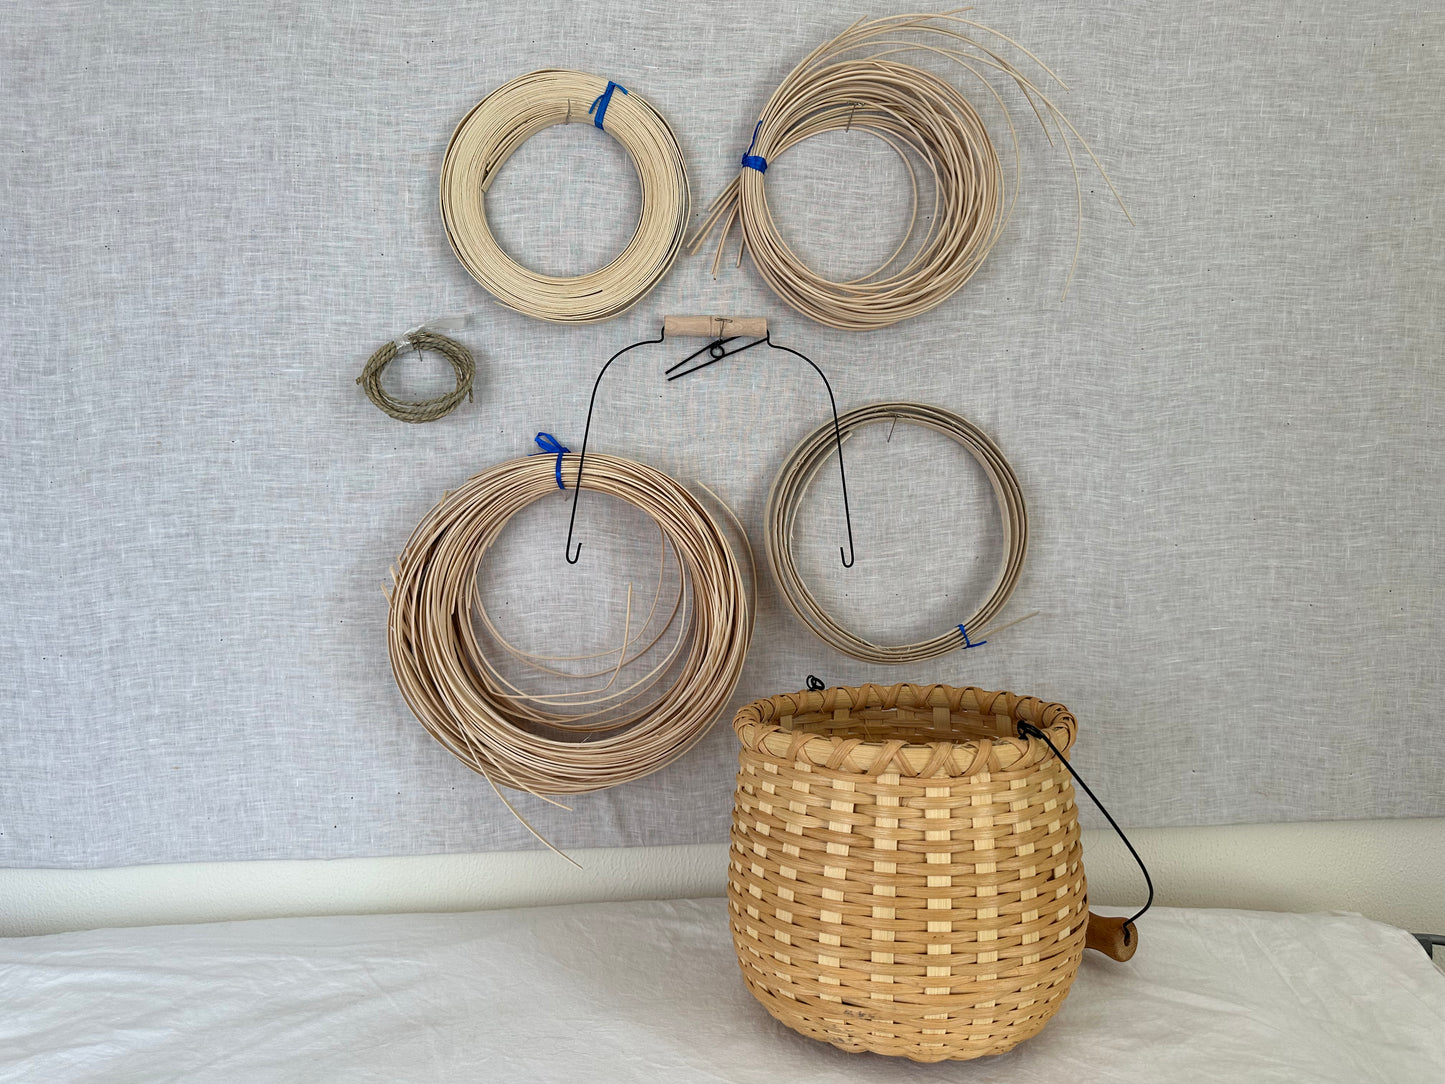 Bean Pot Basket Weaving Bundle